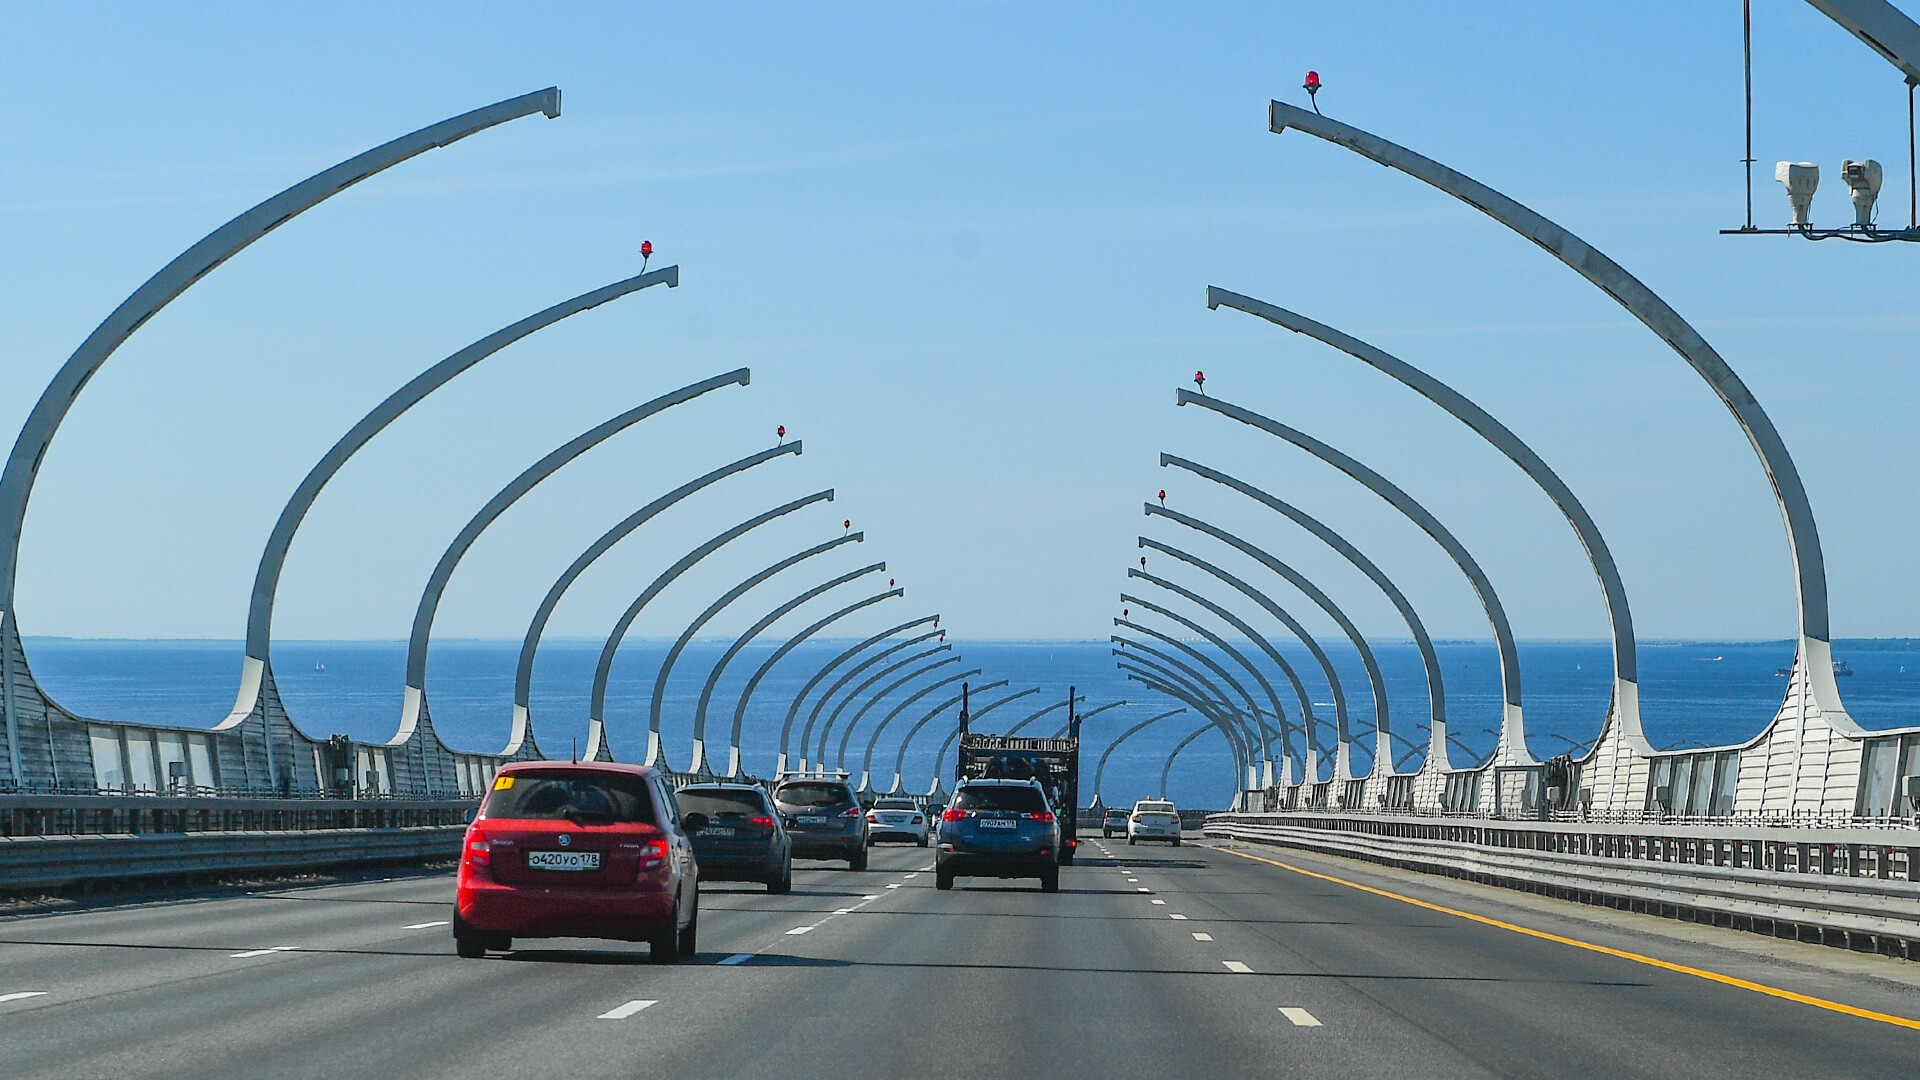 St. Petersburg's toll road